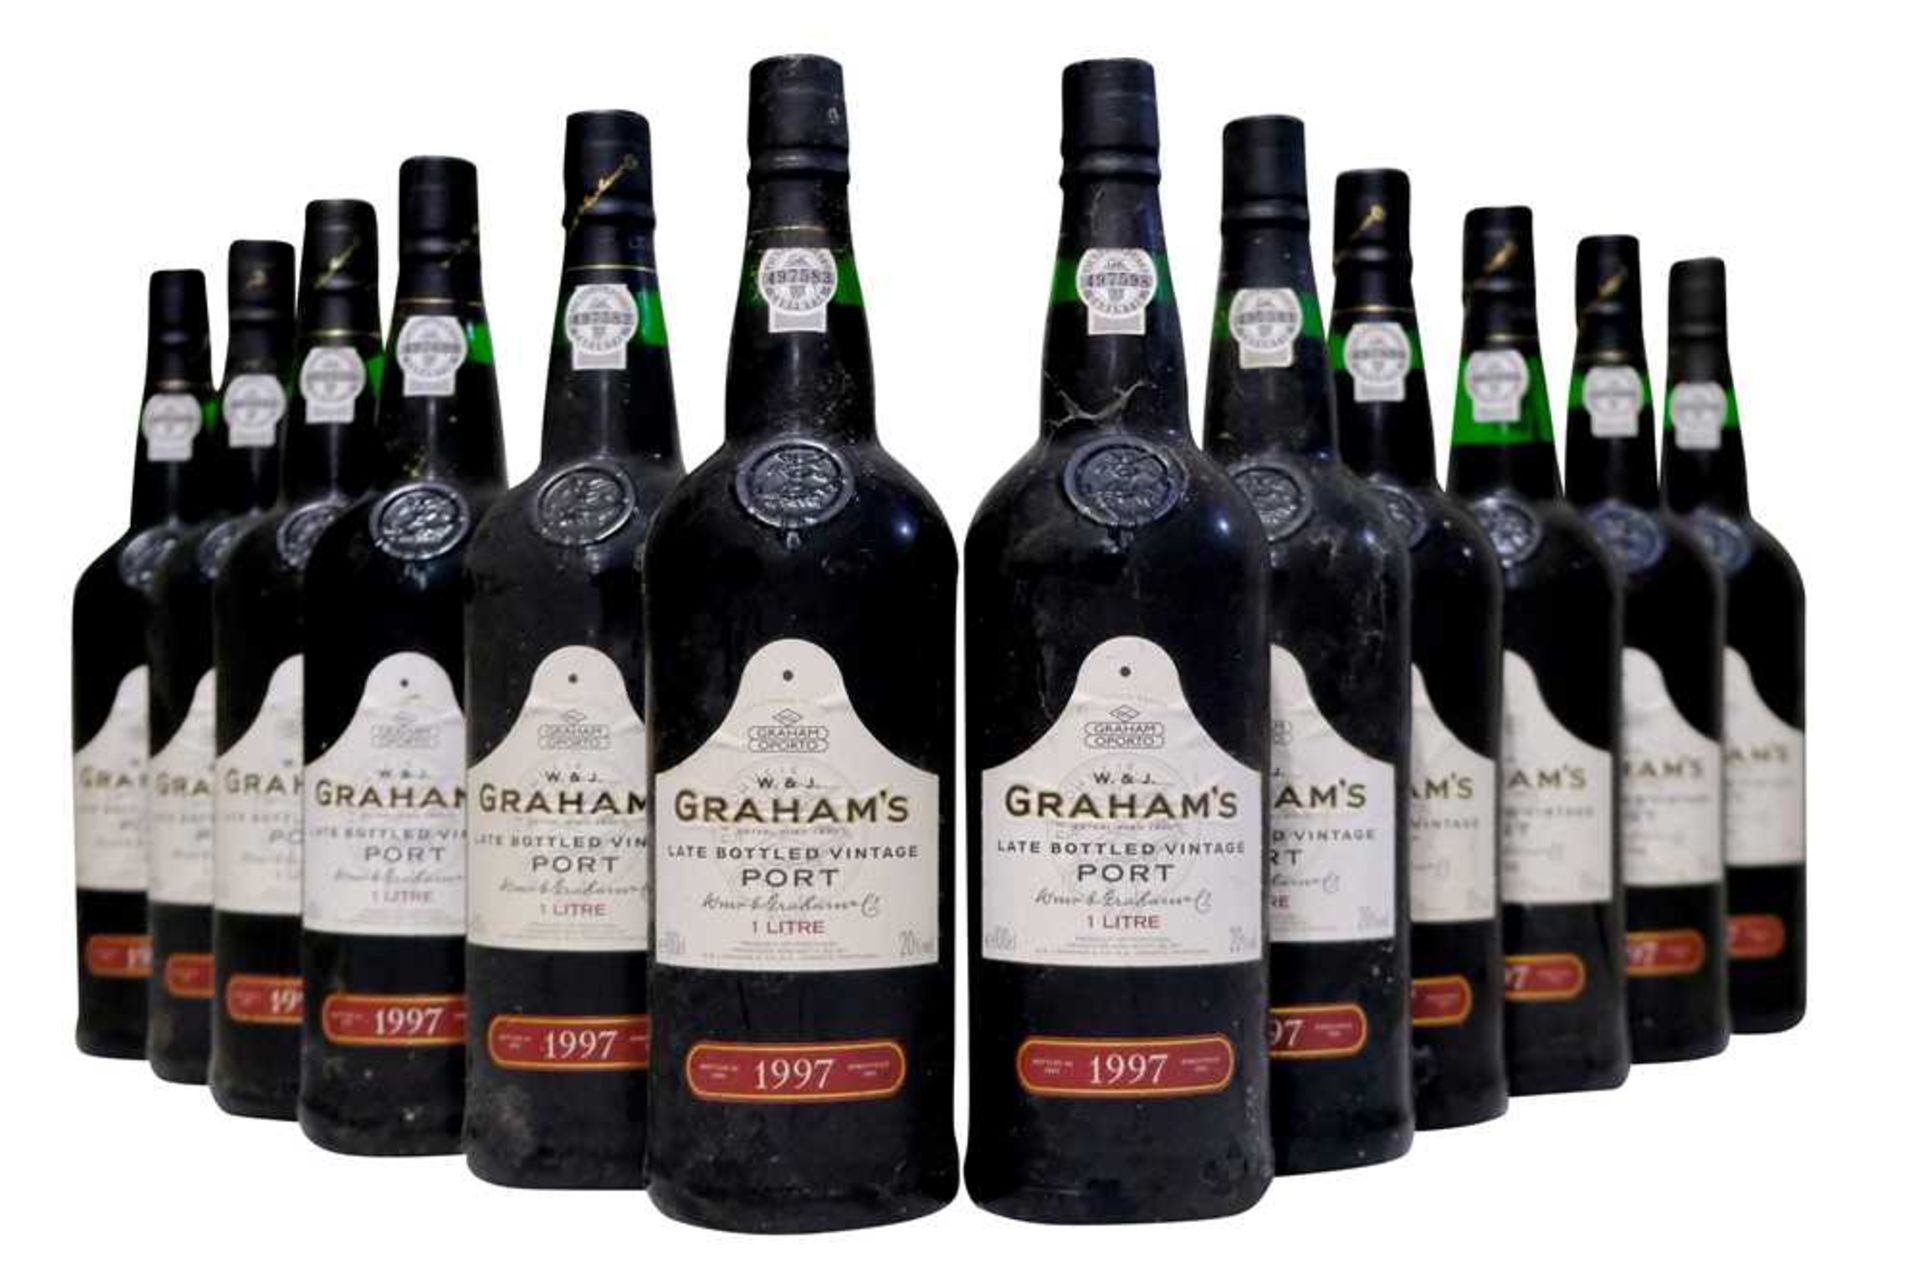 Grahams, Late Bottled Vintage Port, 1997, twelve bottles